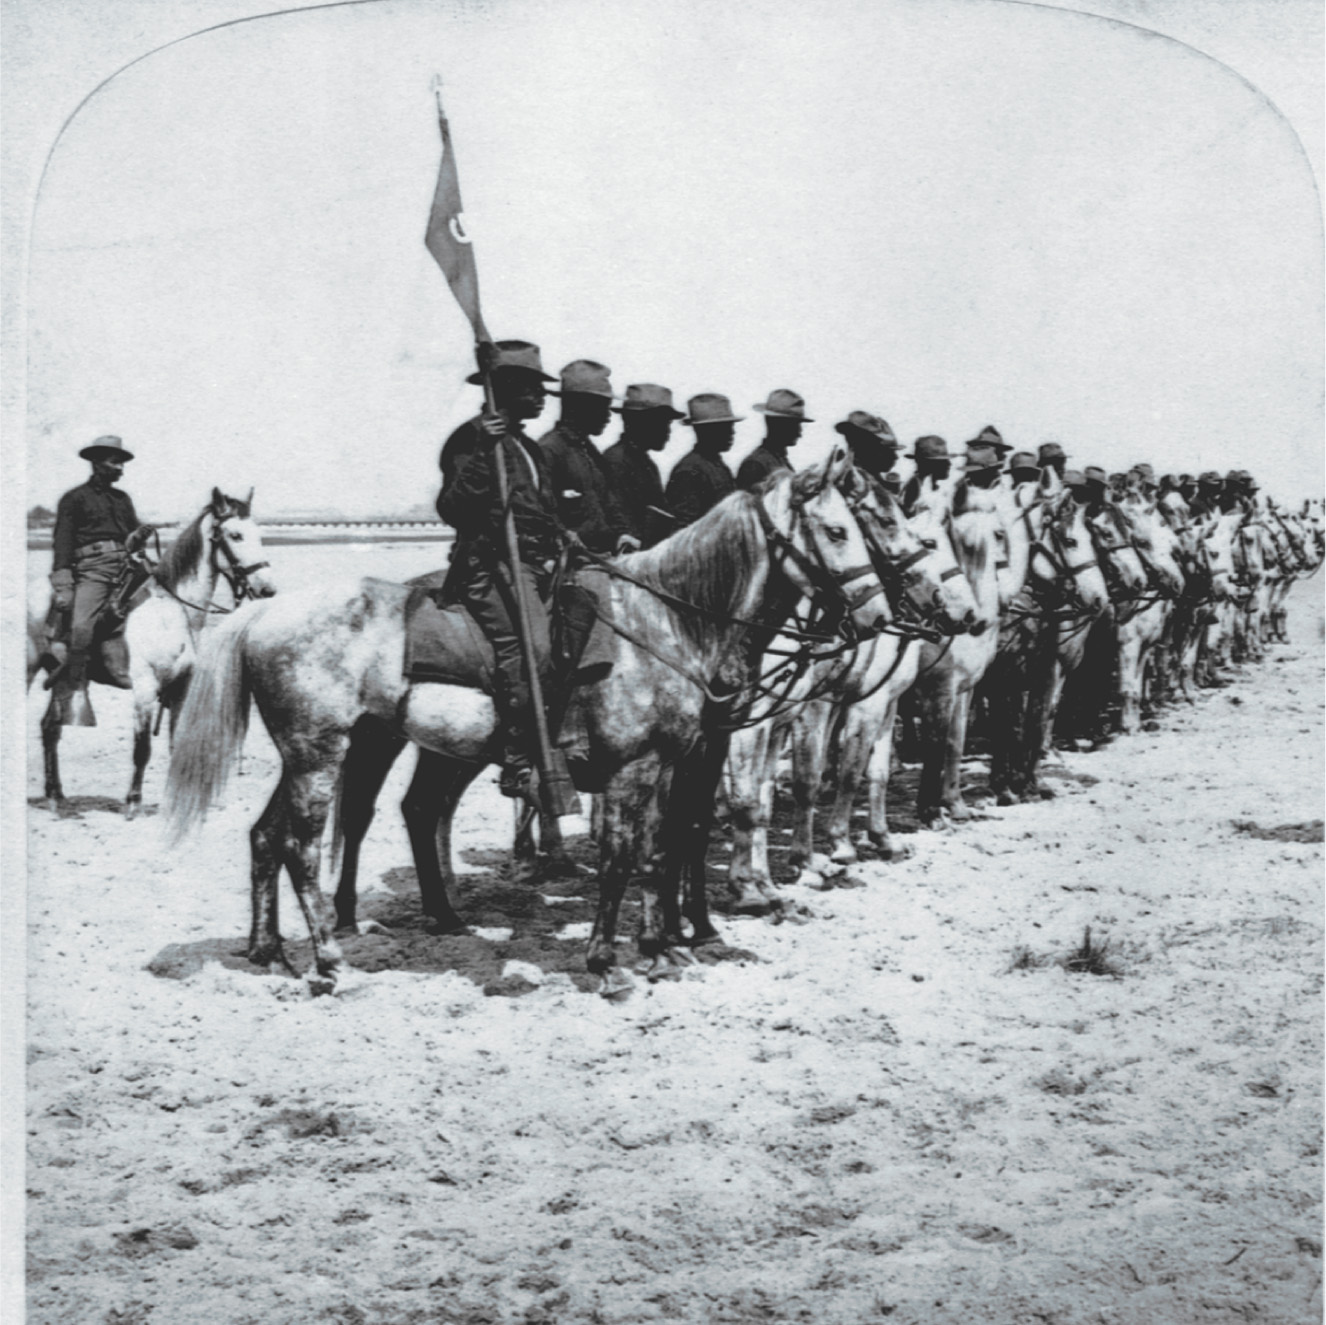 Photo: African-American troops on horseback